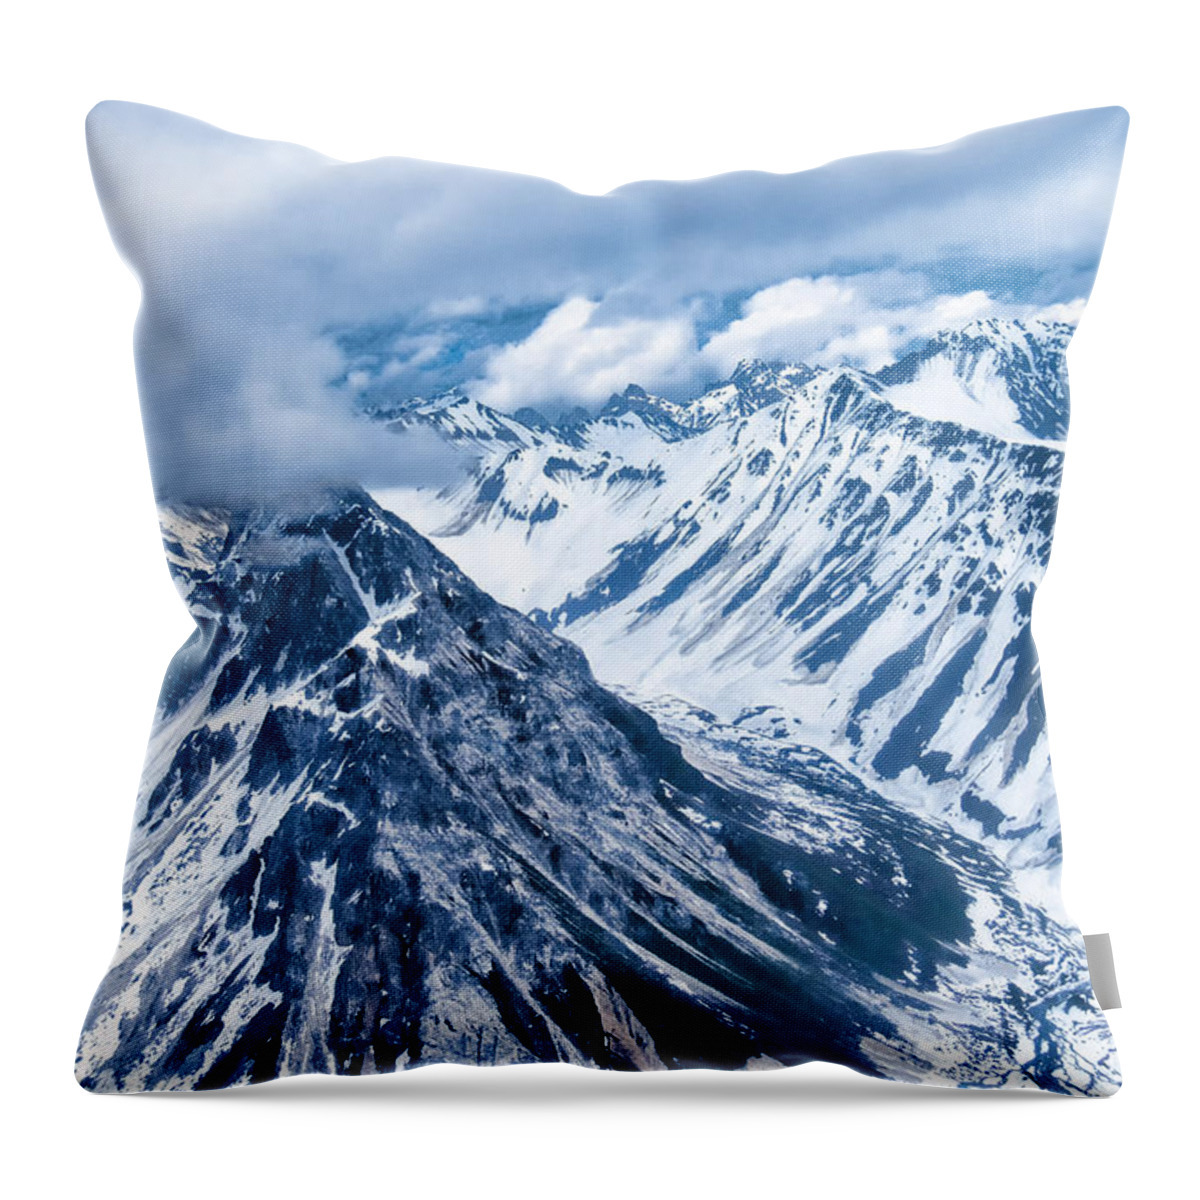 Denali Throw Pillow featuring the photograph Denali National Park by Roberta Kayne